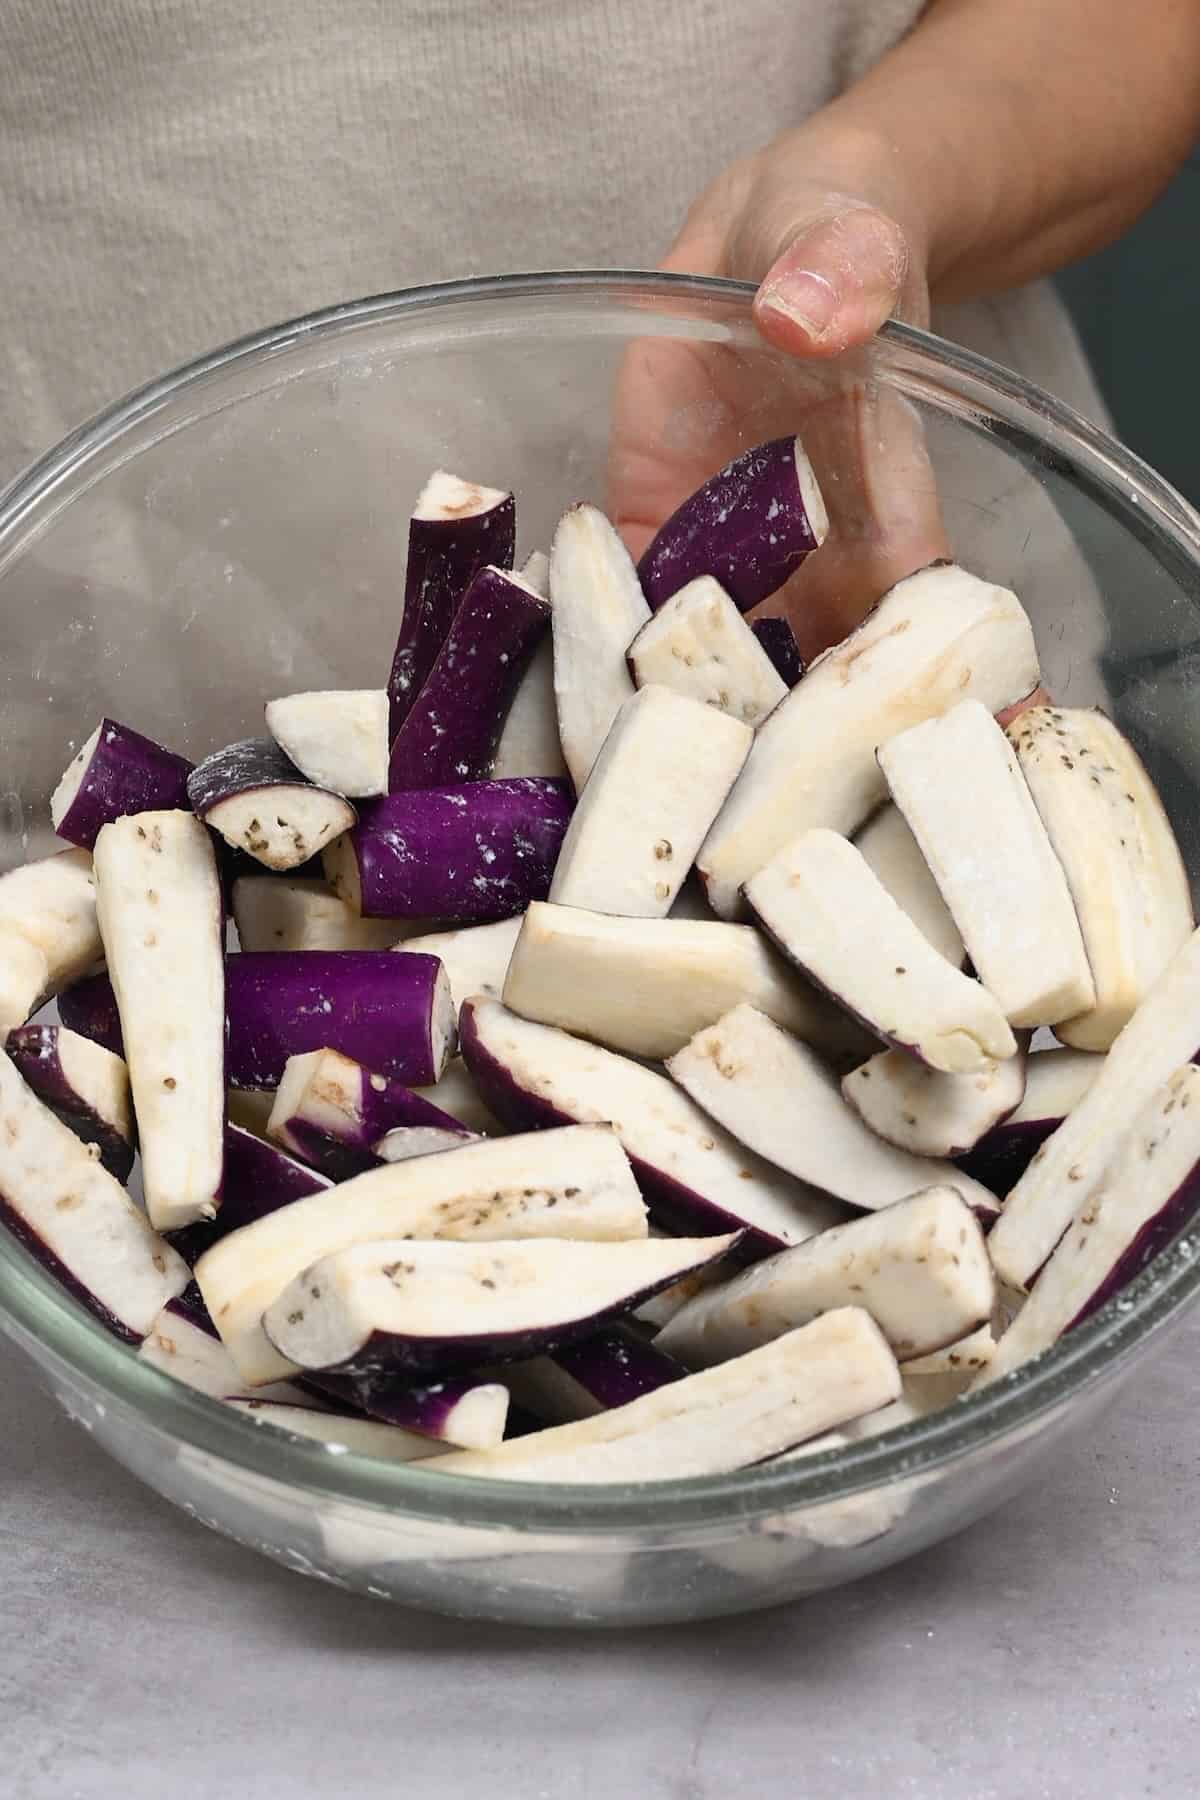 Eggplant covered in cornstarch